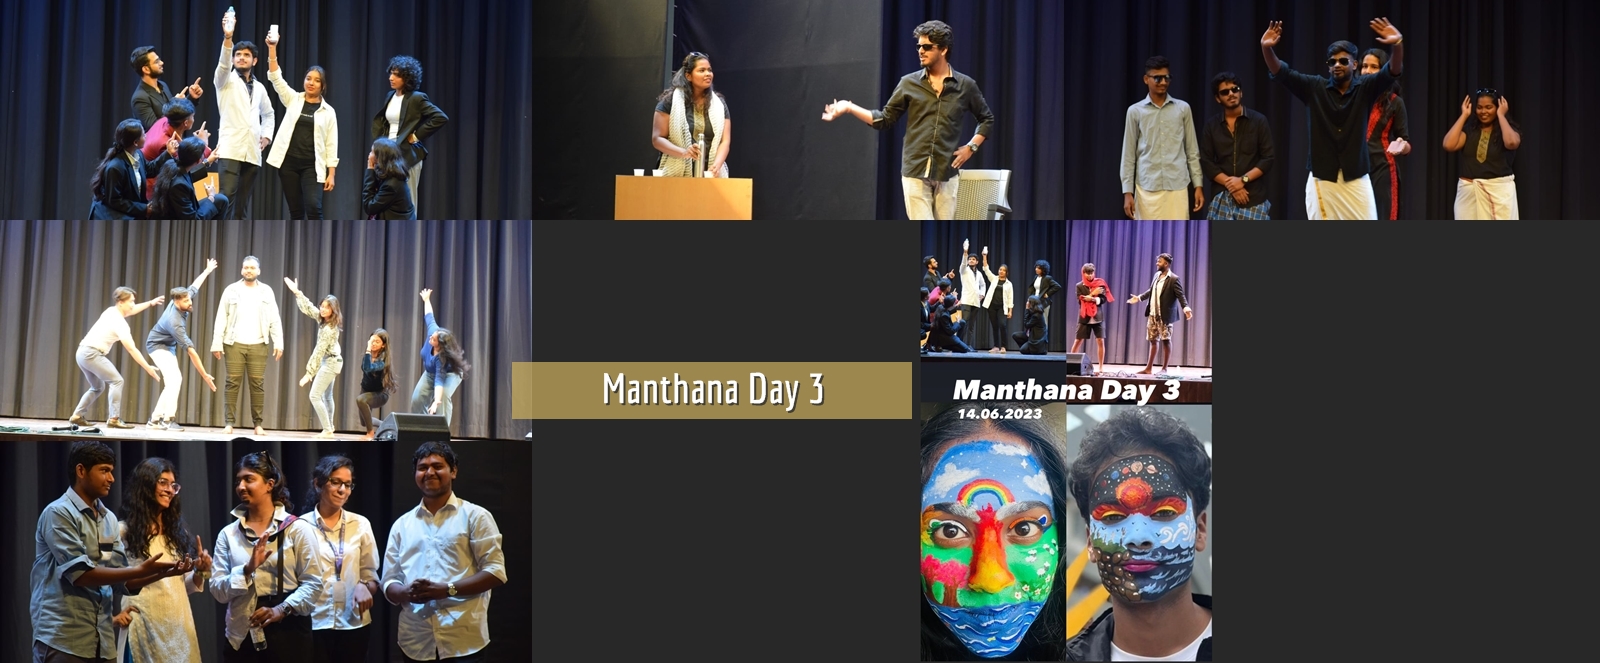 Manthana Day 3